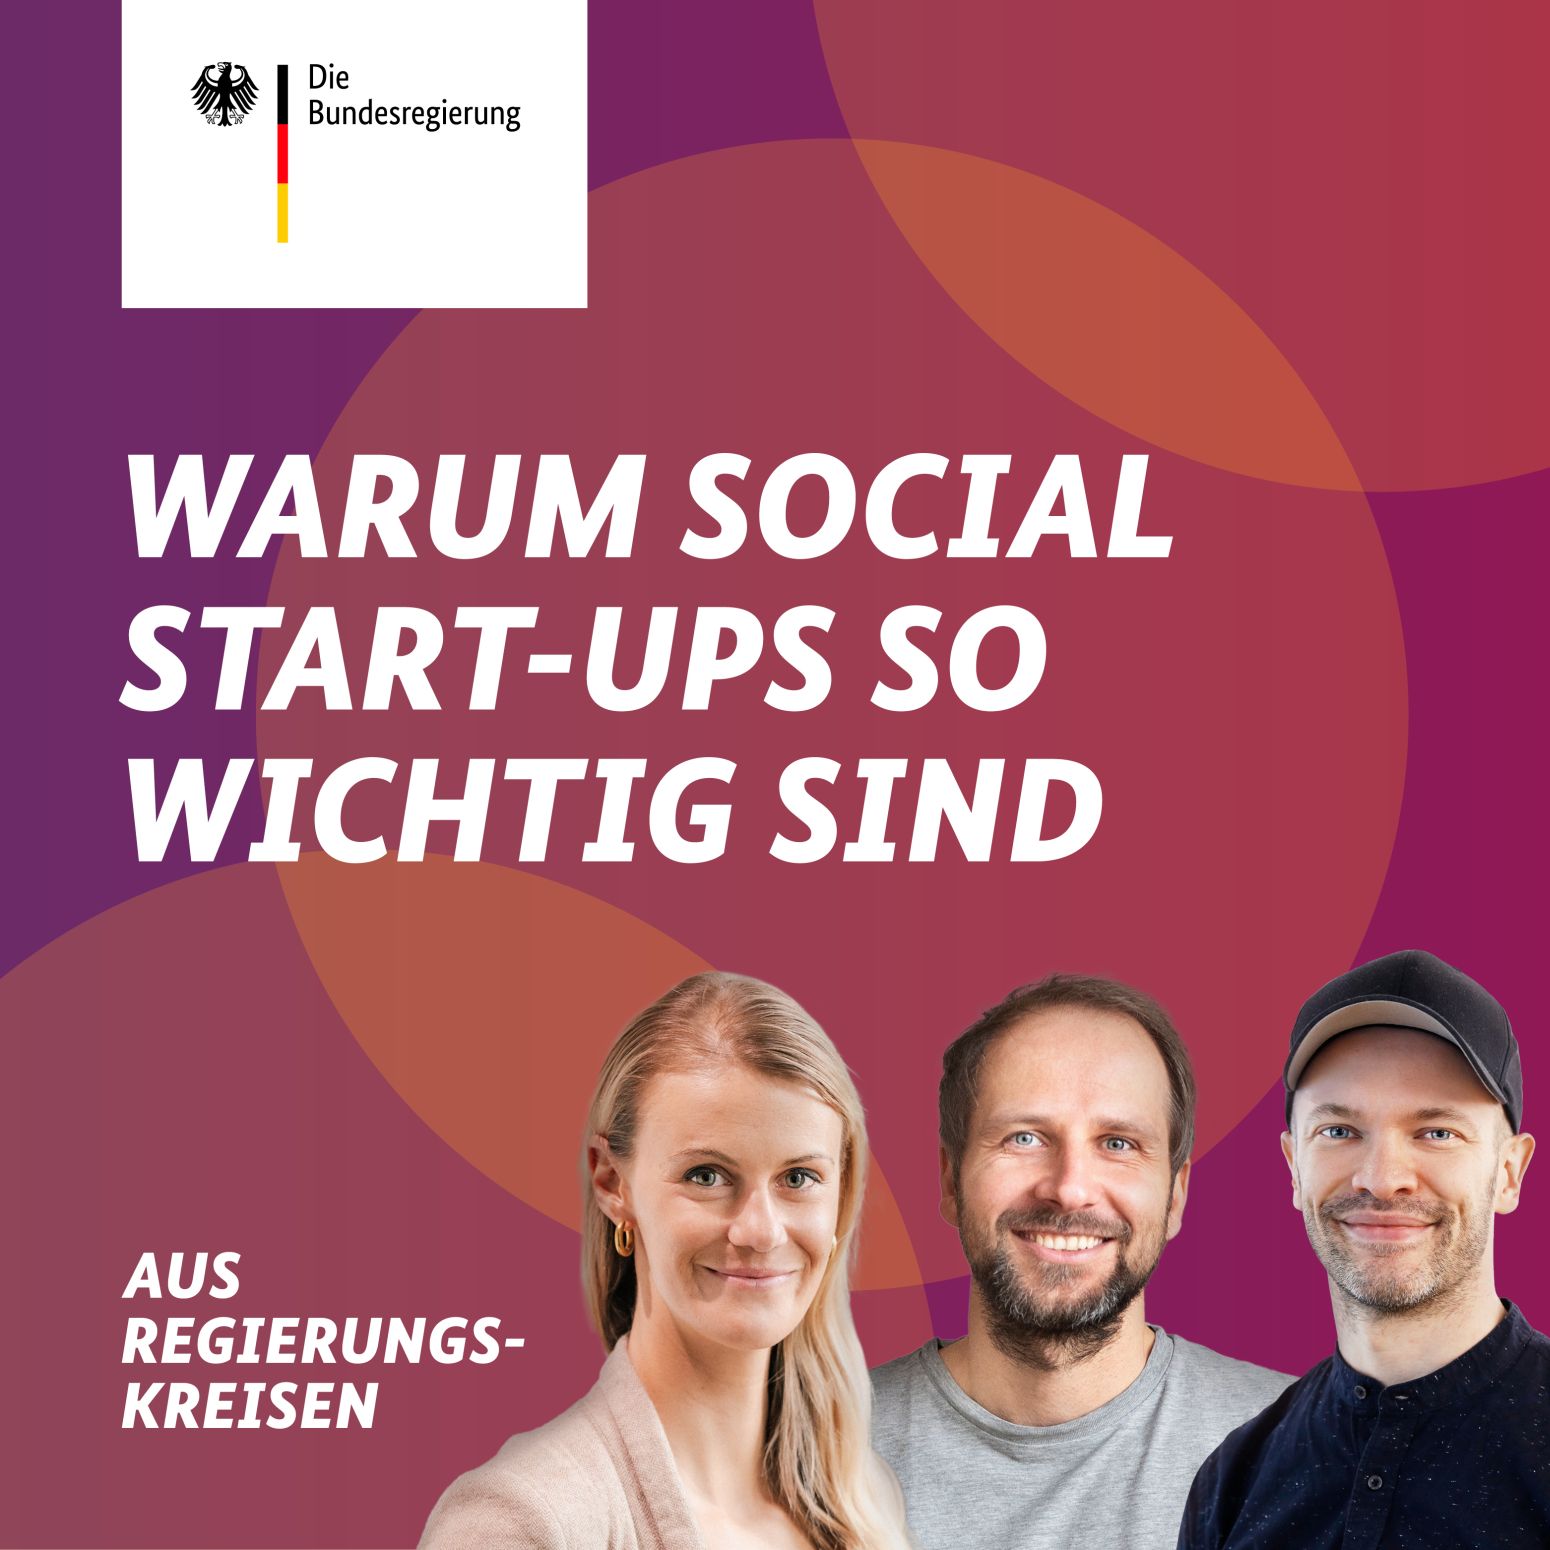 Beauftragte für Soziale Innovationen trifft Ecosia-Gründer: Warum braucht Deutschland mehr Social Start-ups?